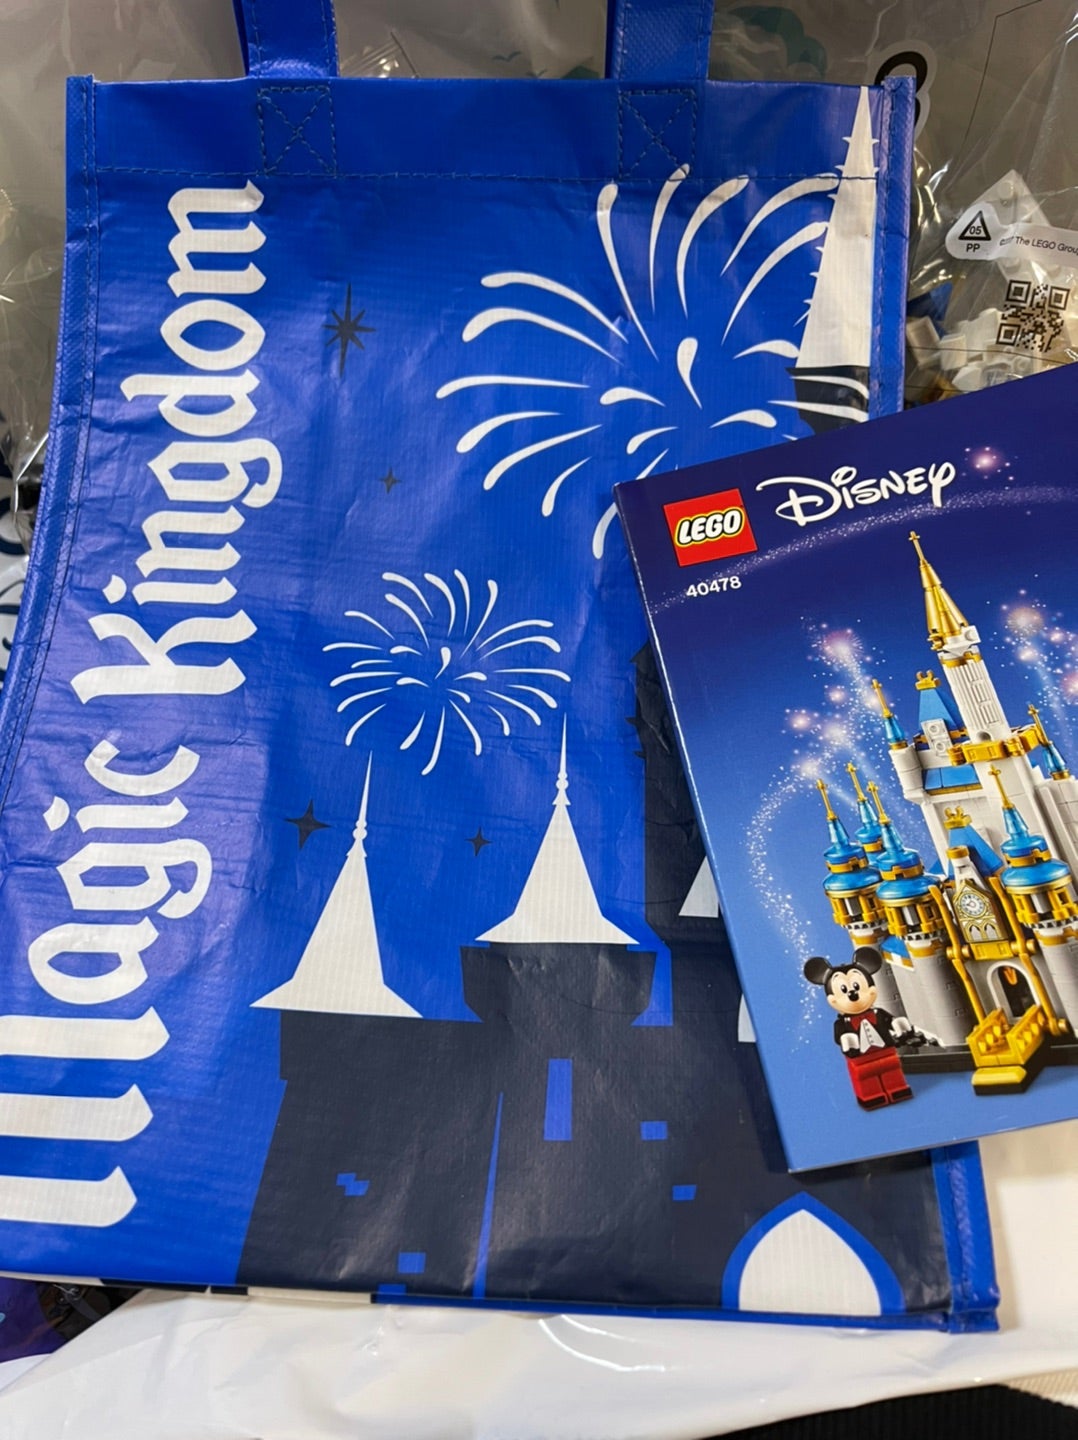 LEGO】WDW50周年のシンデレラ城を作ってみよう〜♪ | 「吉田さんちの 